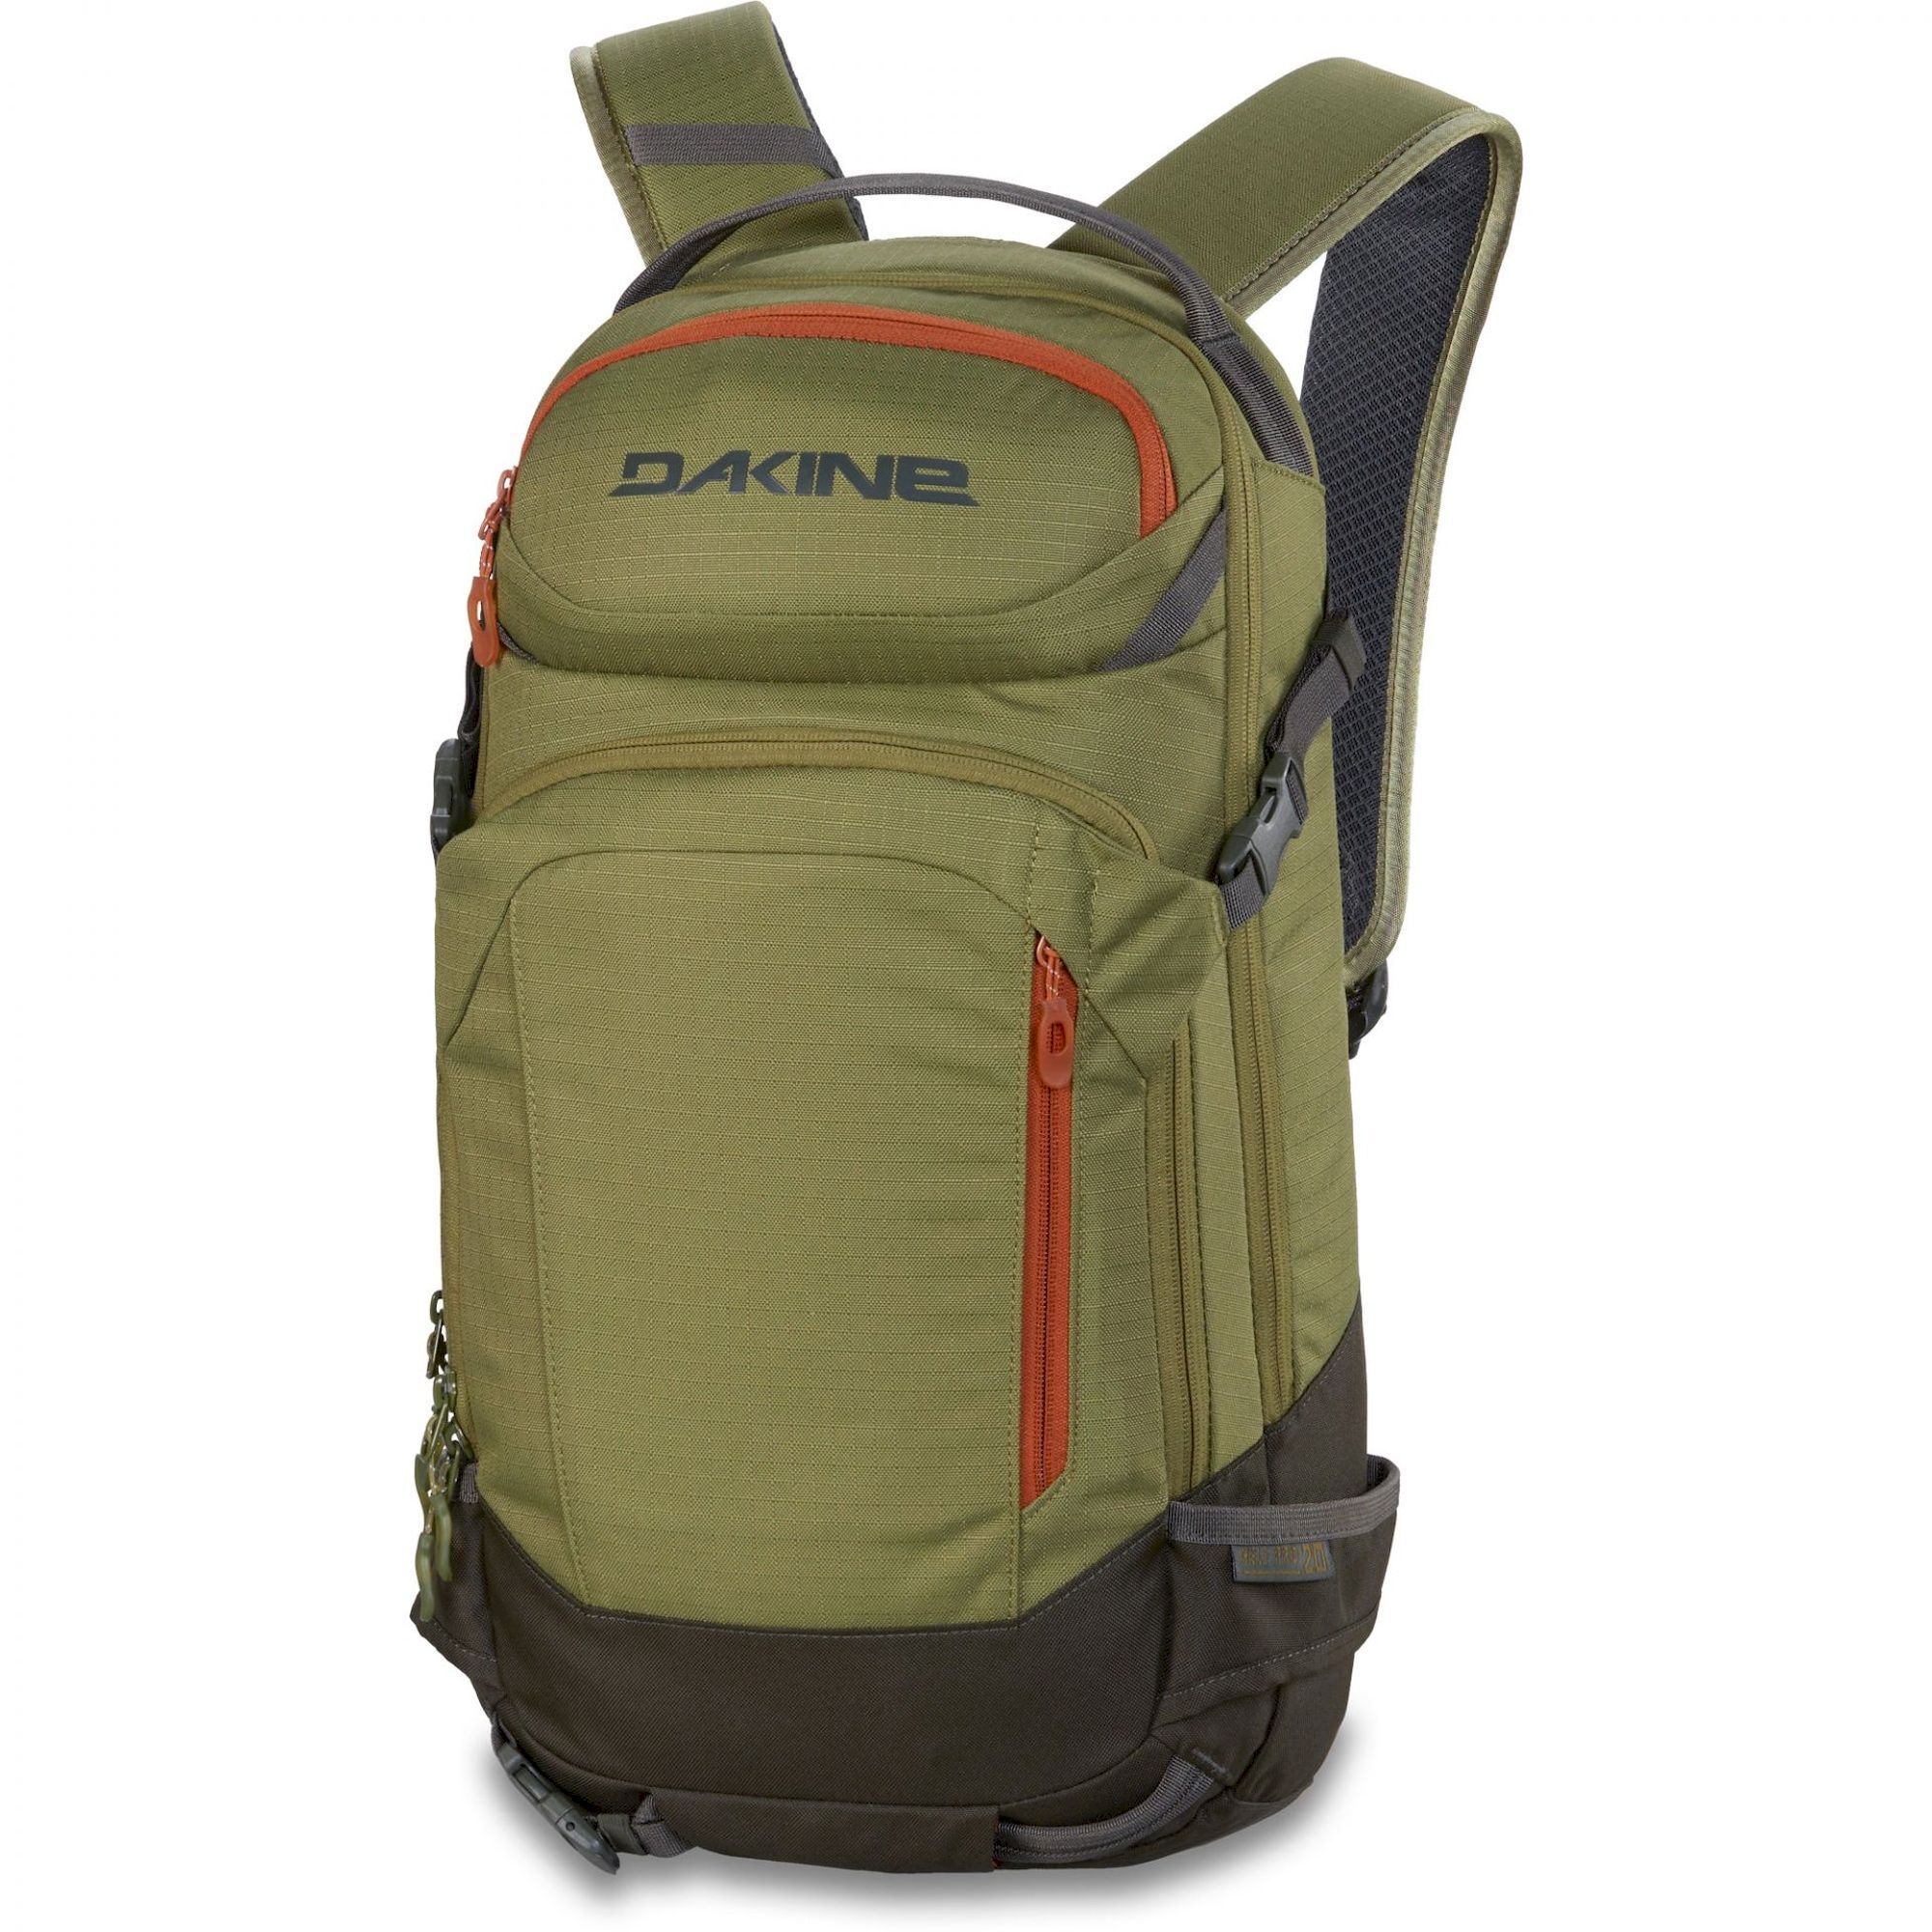 Dakine Heli Pro 20L - Ski backpack - Men's